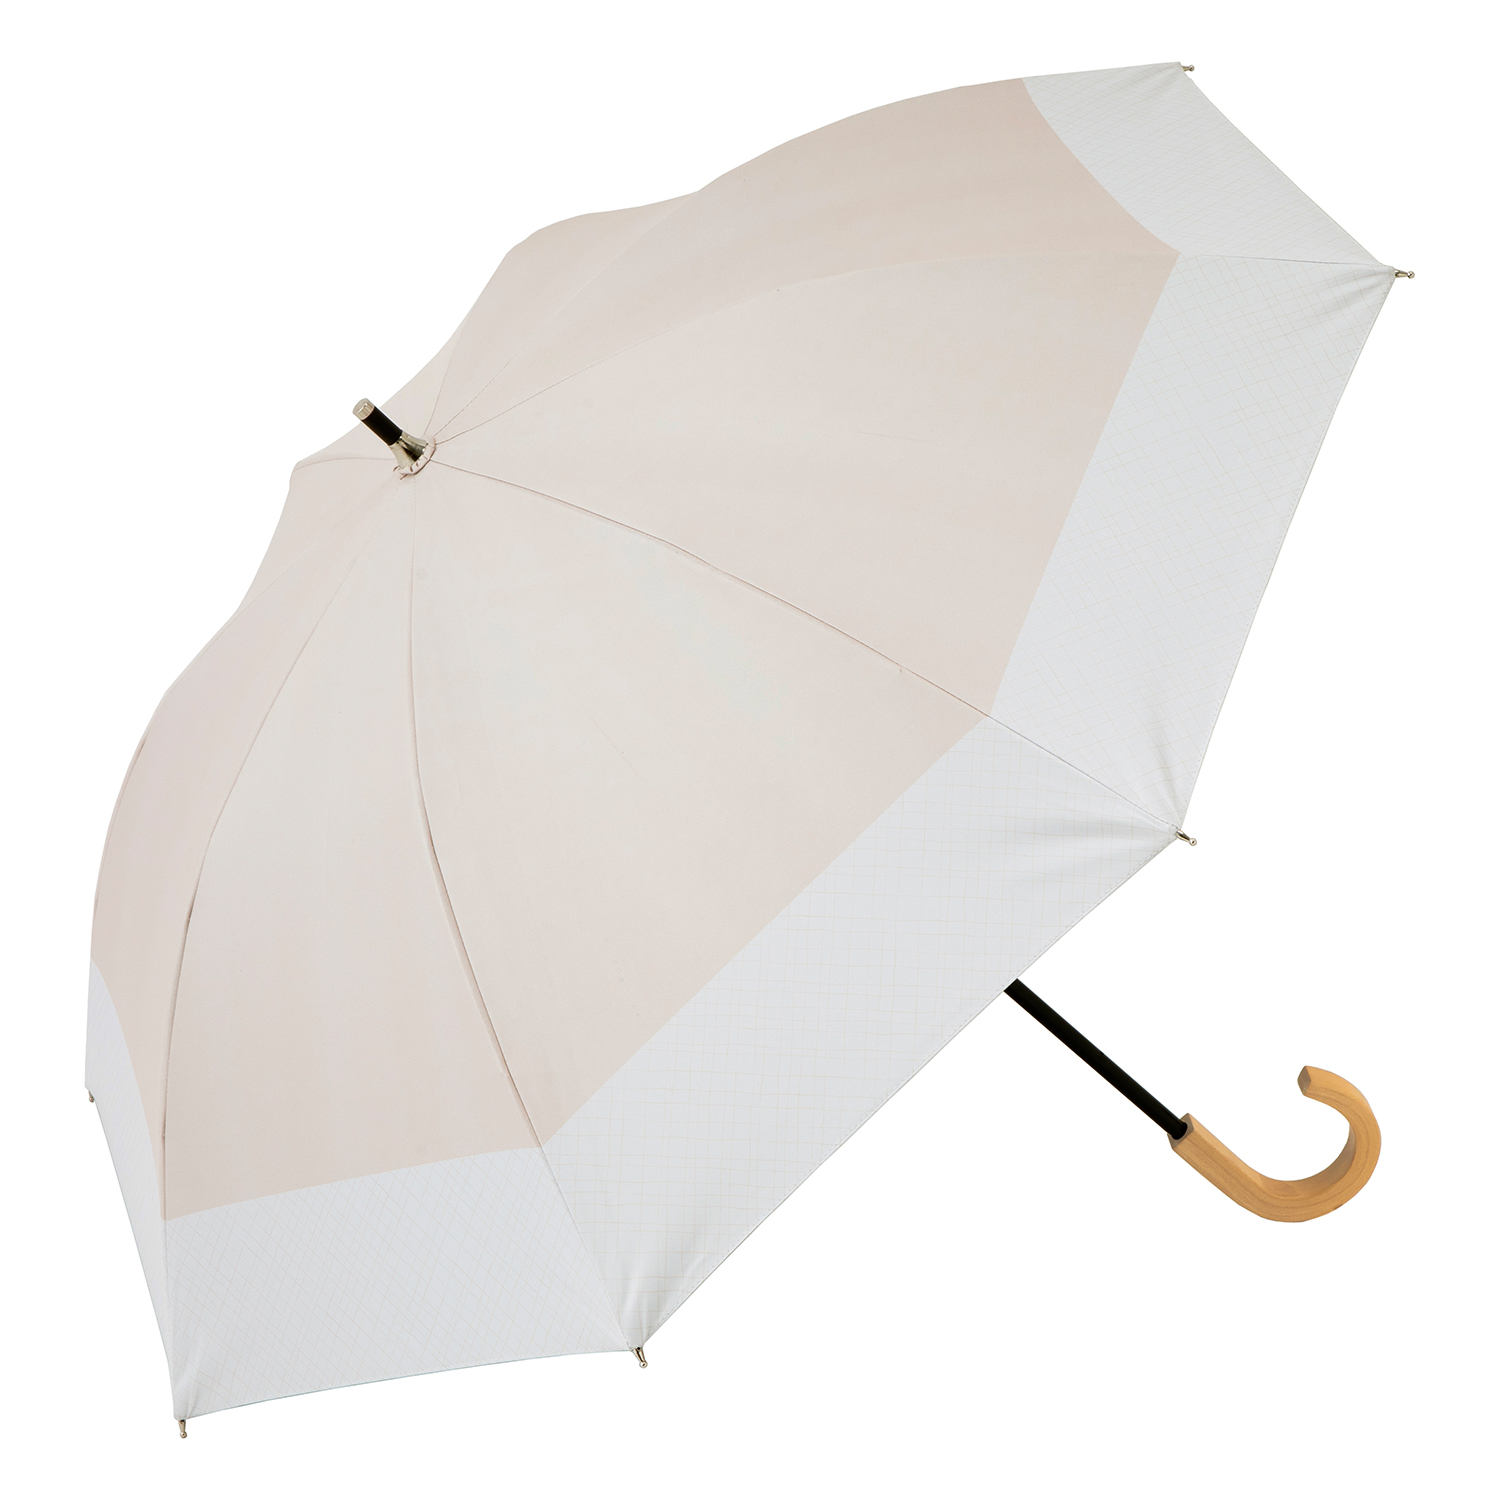 日傘 ショート傘 50cm×8本骨 UVカット 遮熱 晴雨兼用 コンパクト長傘 レディース クールプ...